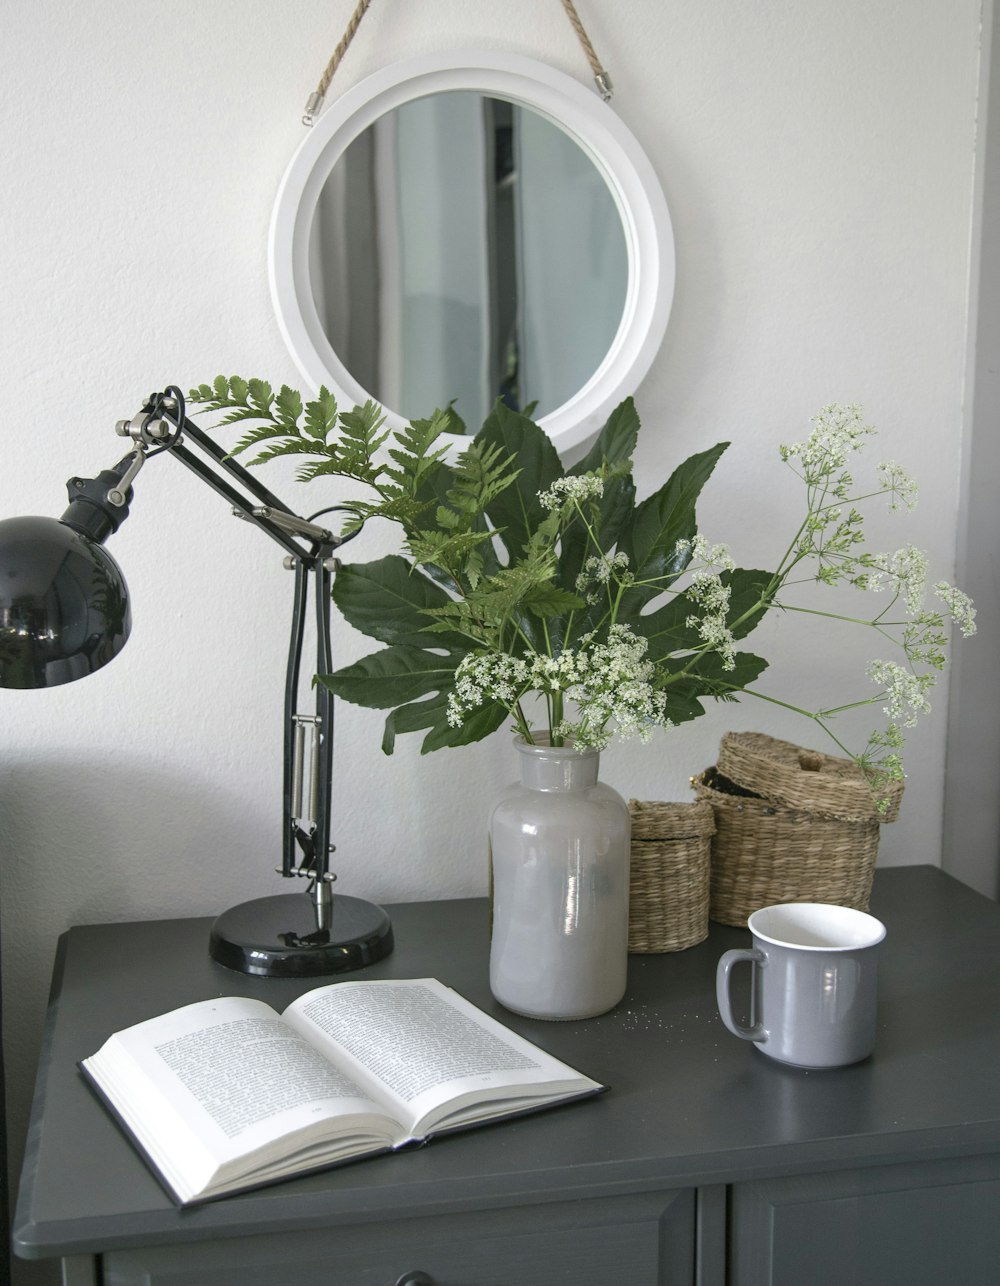 silver and black desk lamp beside white ceramic mug on black wooden table